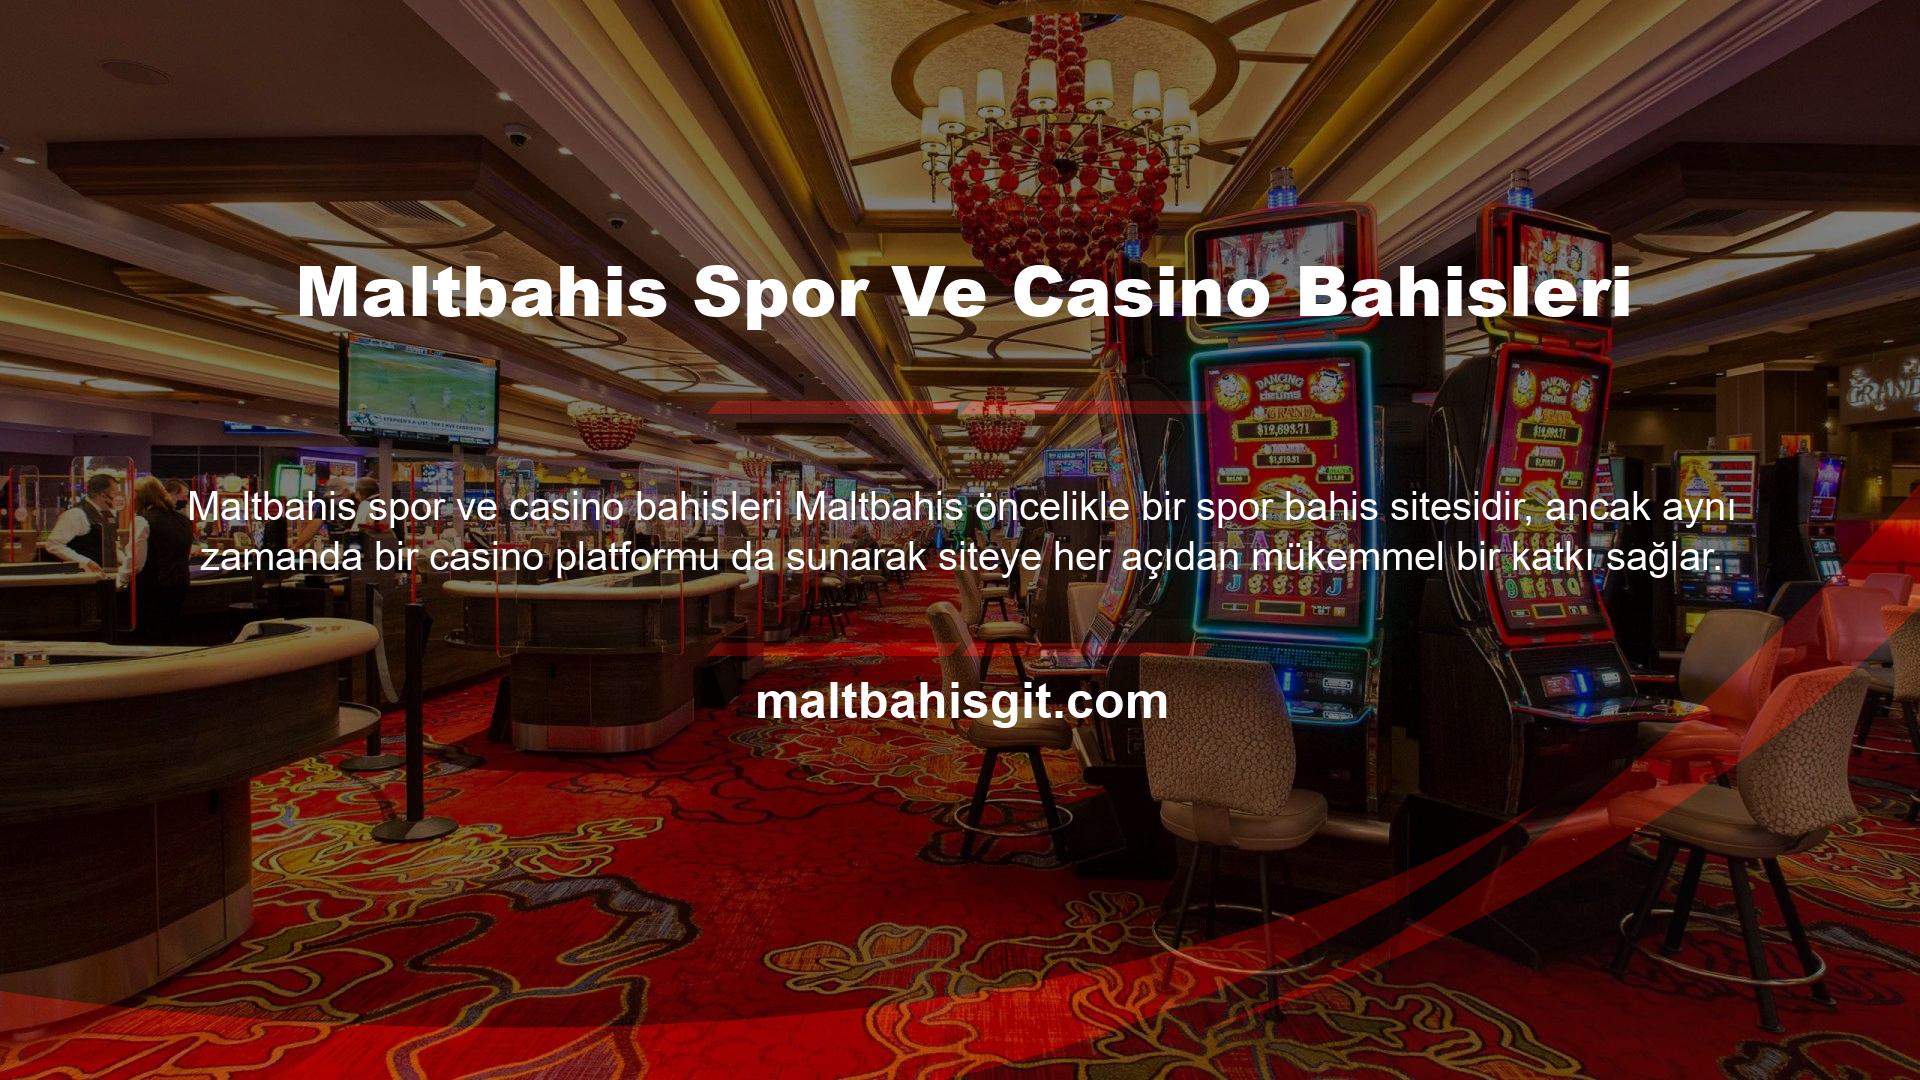 Bu tür oyunlara adanmış sitelerle daha kapsamlı çevrimiçi casinolar bulabilirsiniz, ancak Maltbahis tüm önemli oyun türlerini iyi bir şekilde kapsar